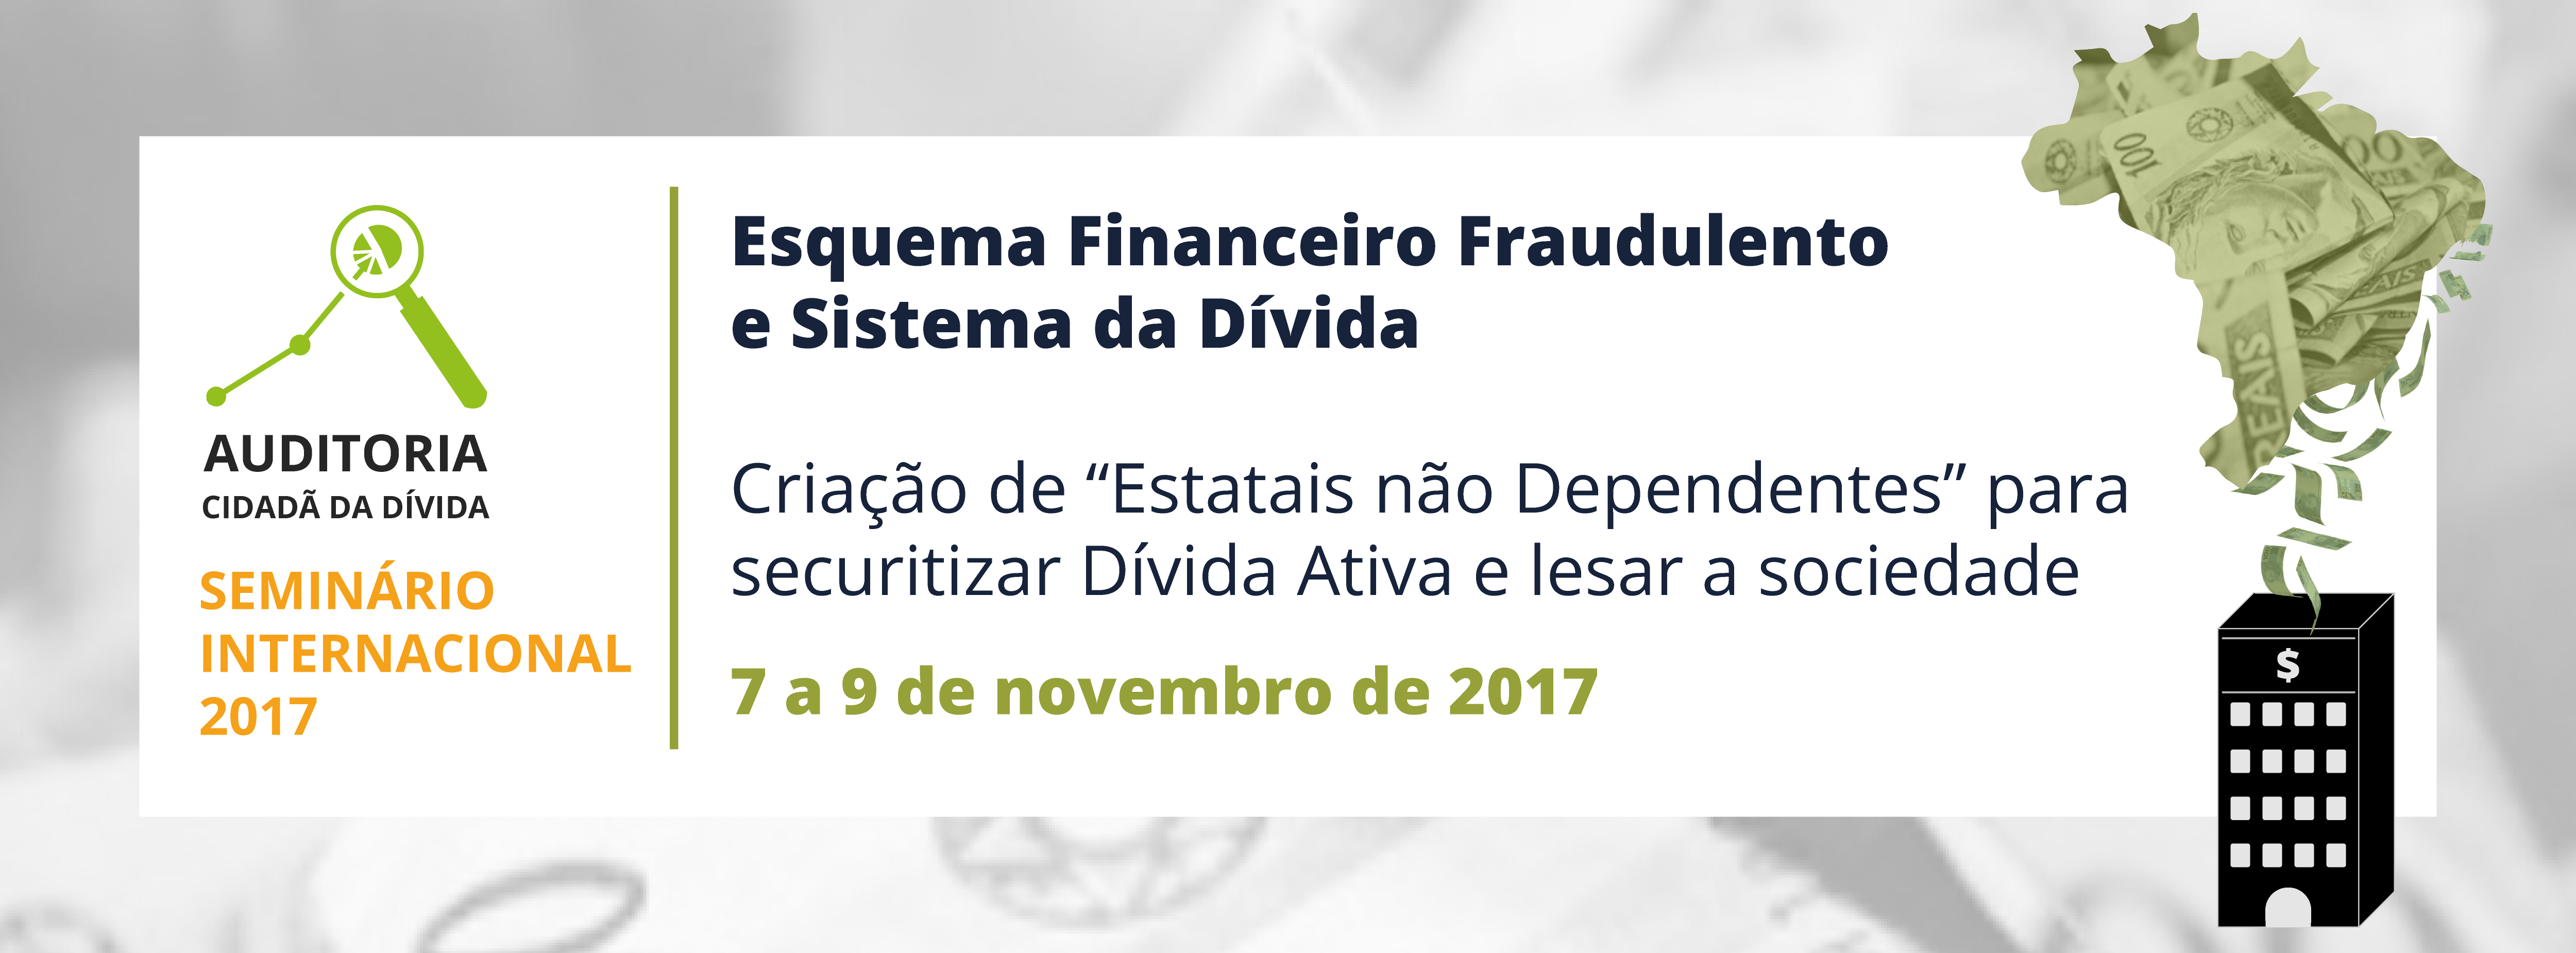 Sistema da dívida no Brasil é tema de Seminário internacional em Brasília